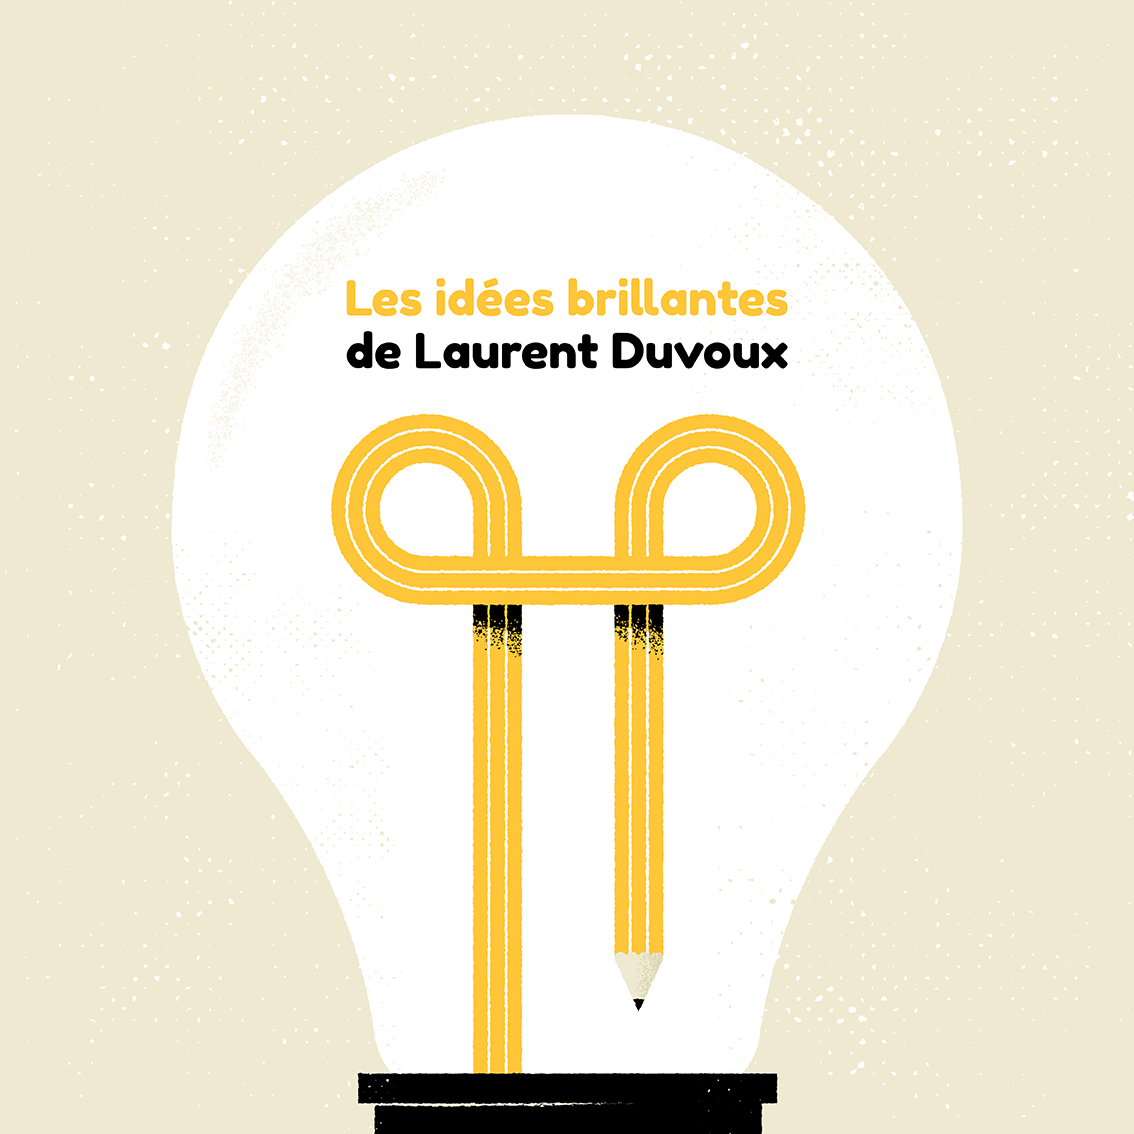 Les idées brillantes de Laurent Duvoux